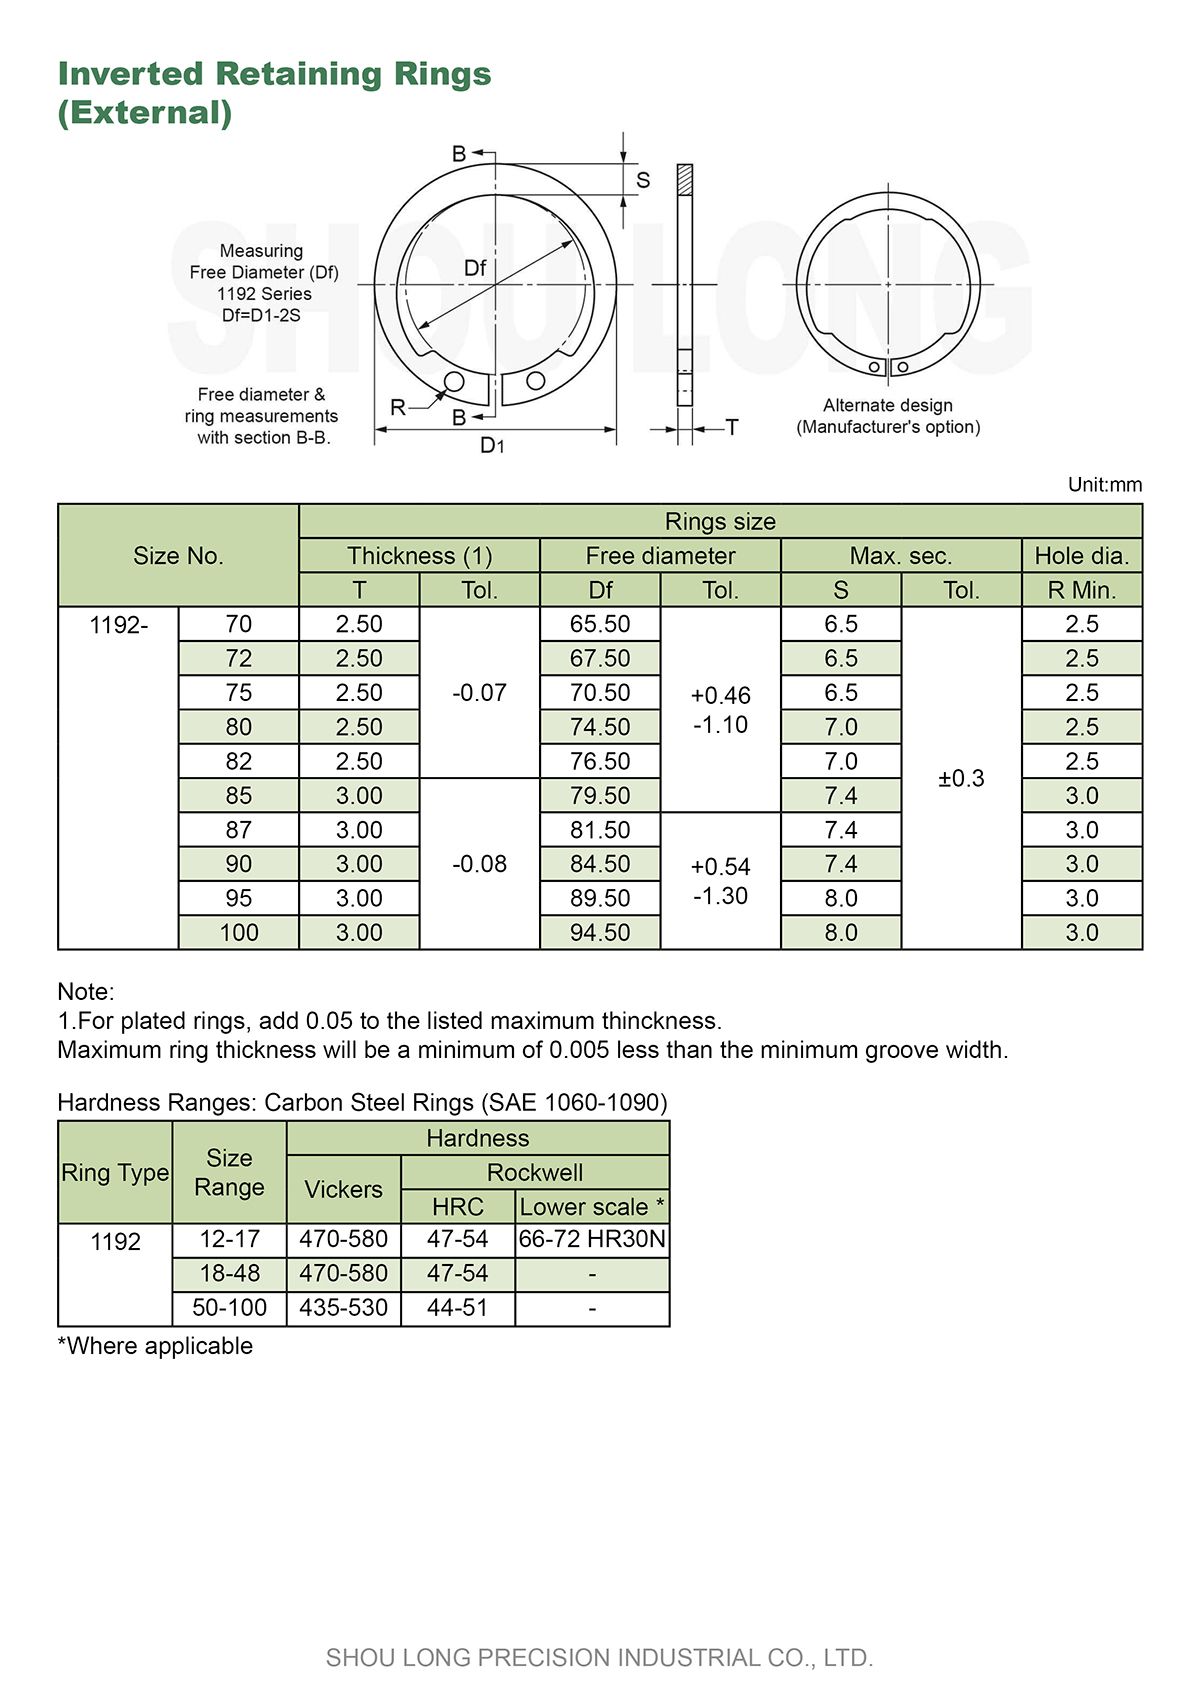 Specifikace invertovaných upevňovacích kroužků pro metrické hřídele-2